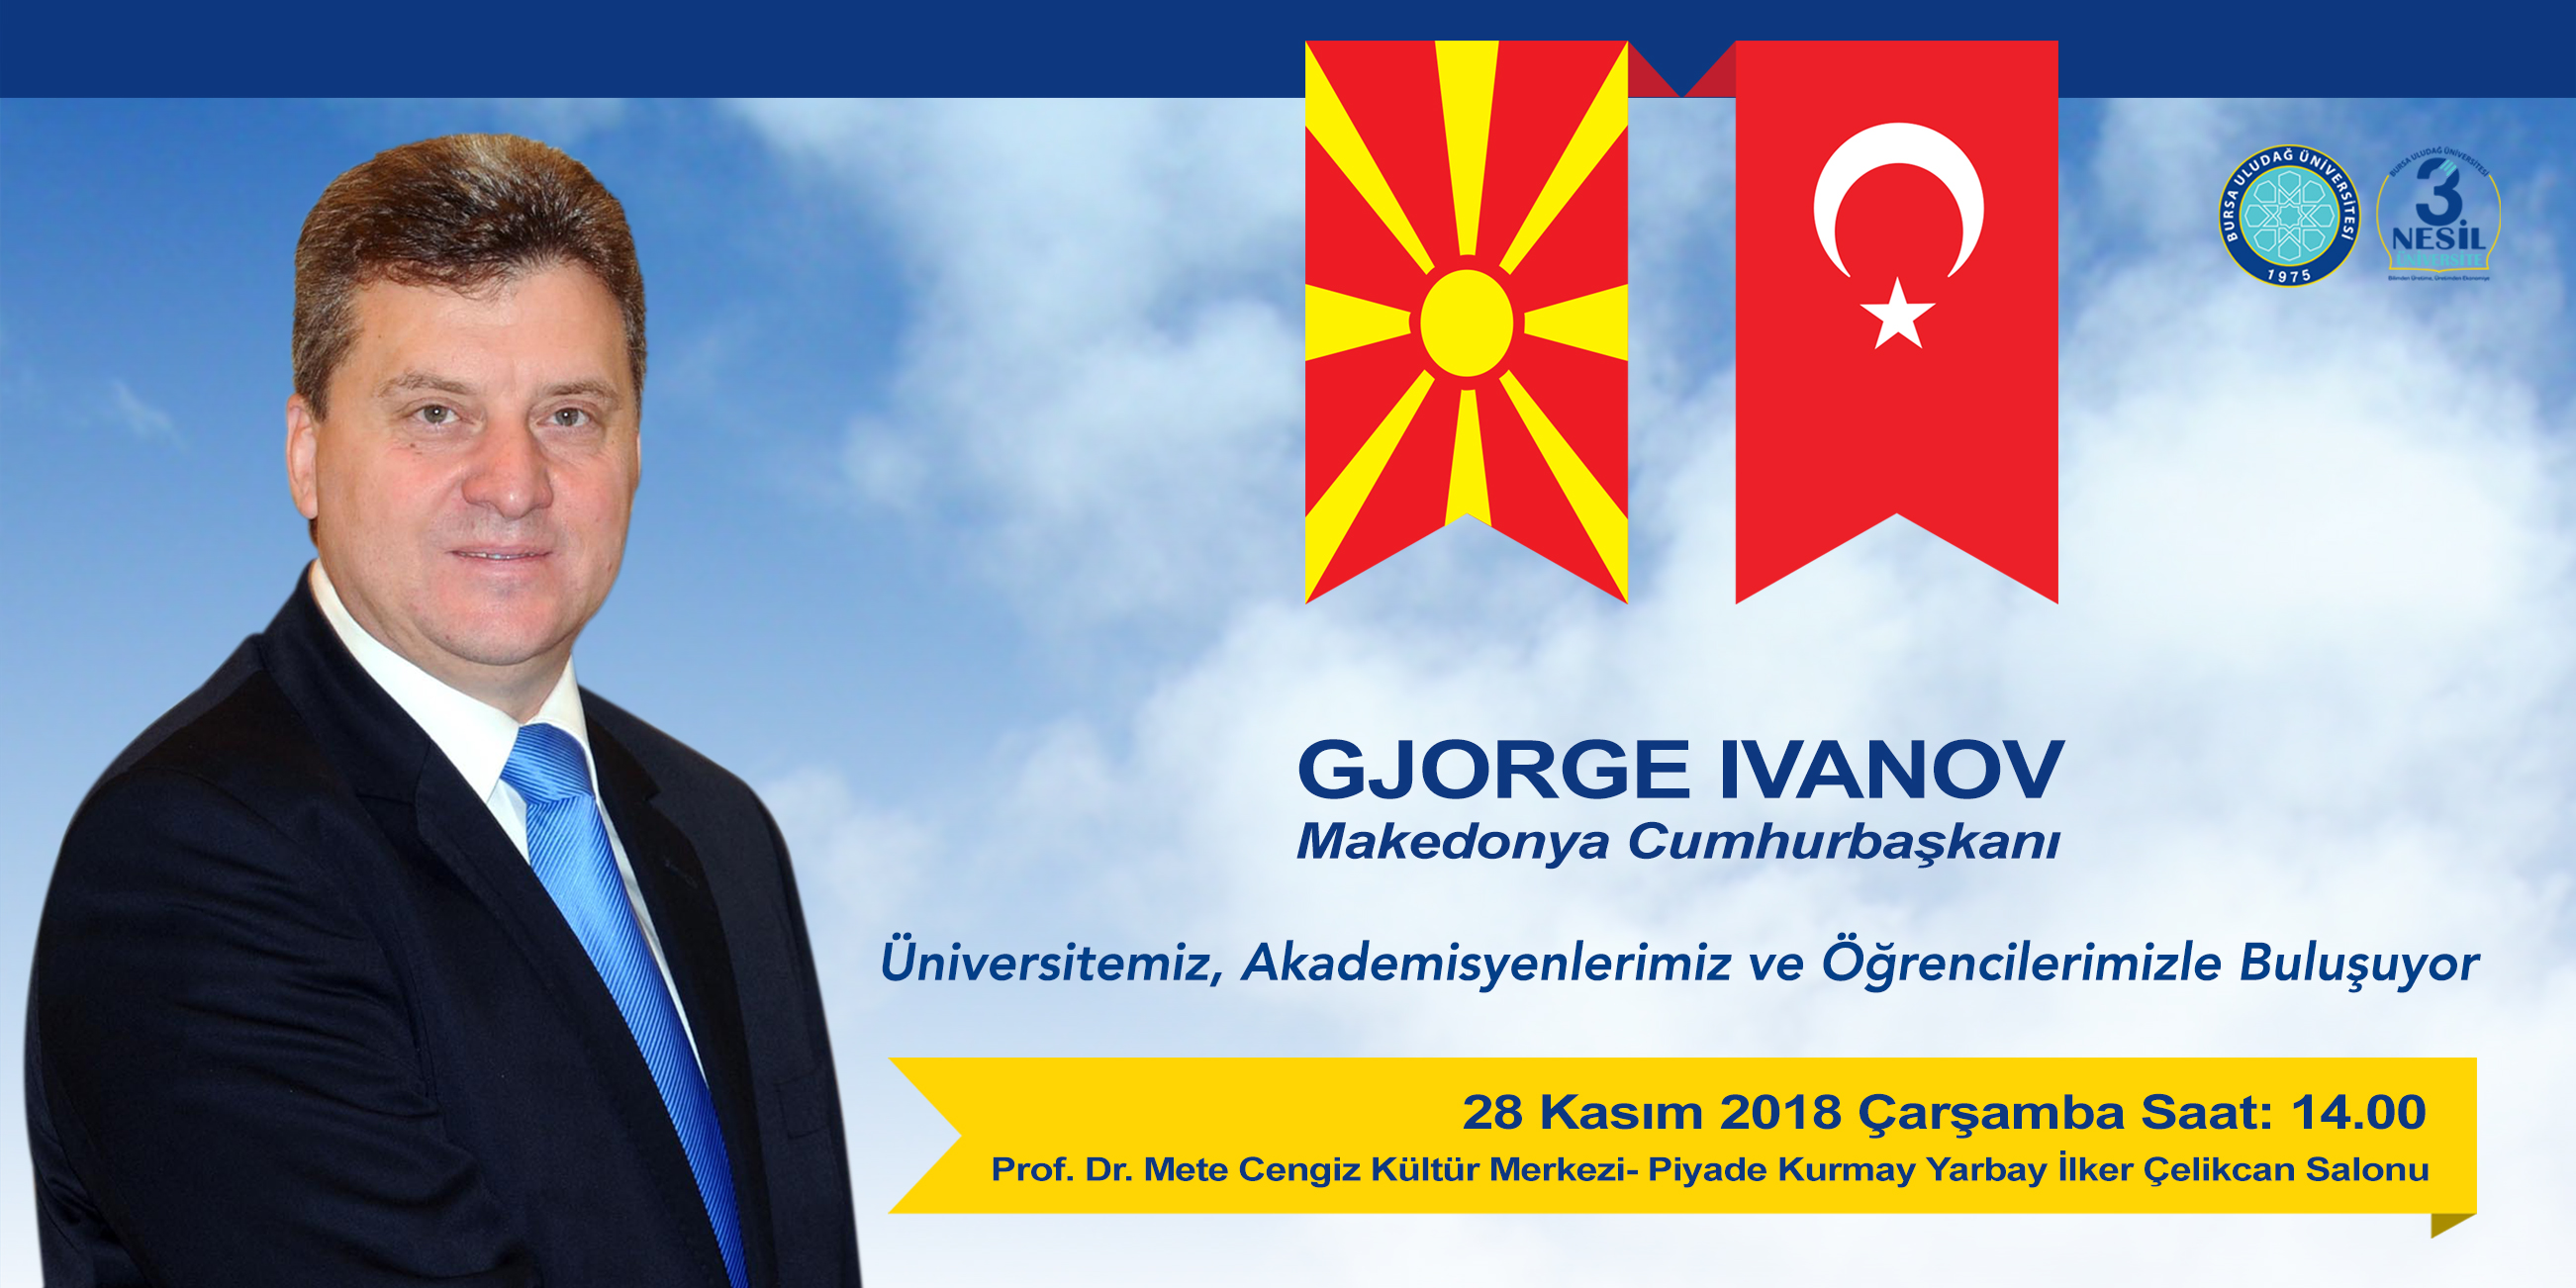  Makedonya Cumhurbaşkanı Gjorge Ivanov, akademik personel ve öğrencilerle buluşuyor 